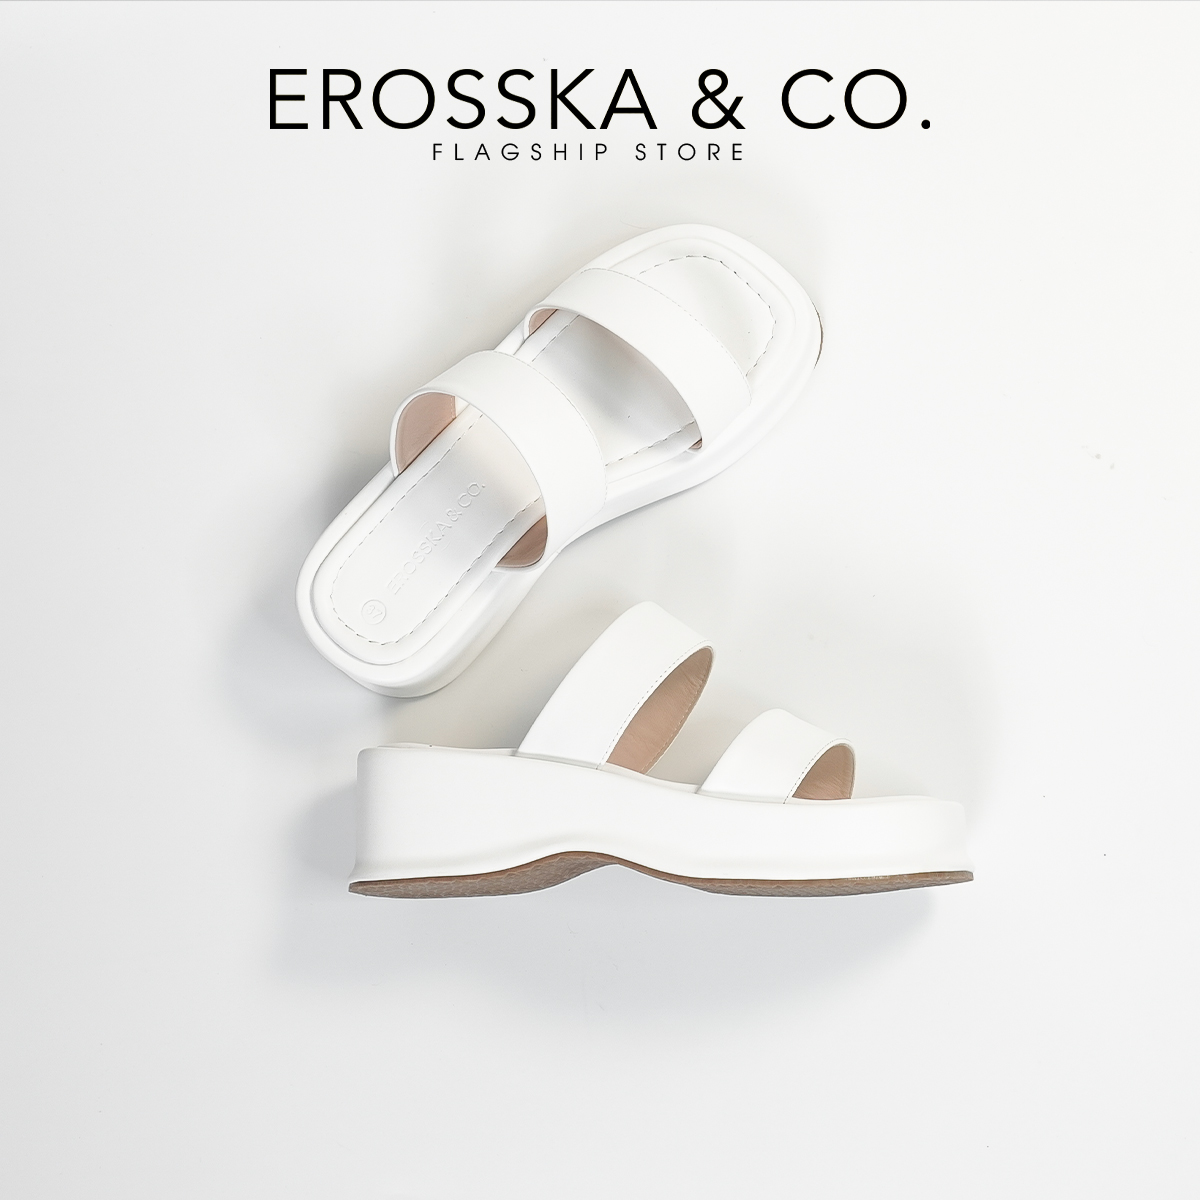 Erosska - Dép nữ thời trang đế xuồng kiểu dáng cơ bản - SB026